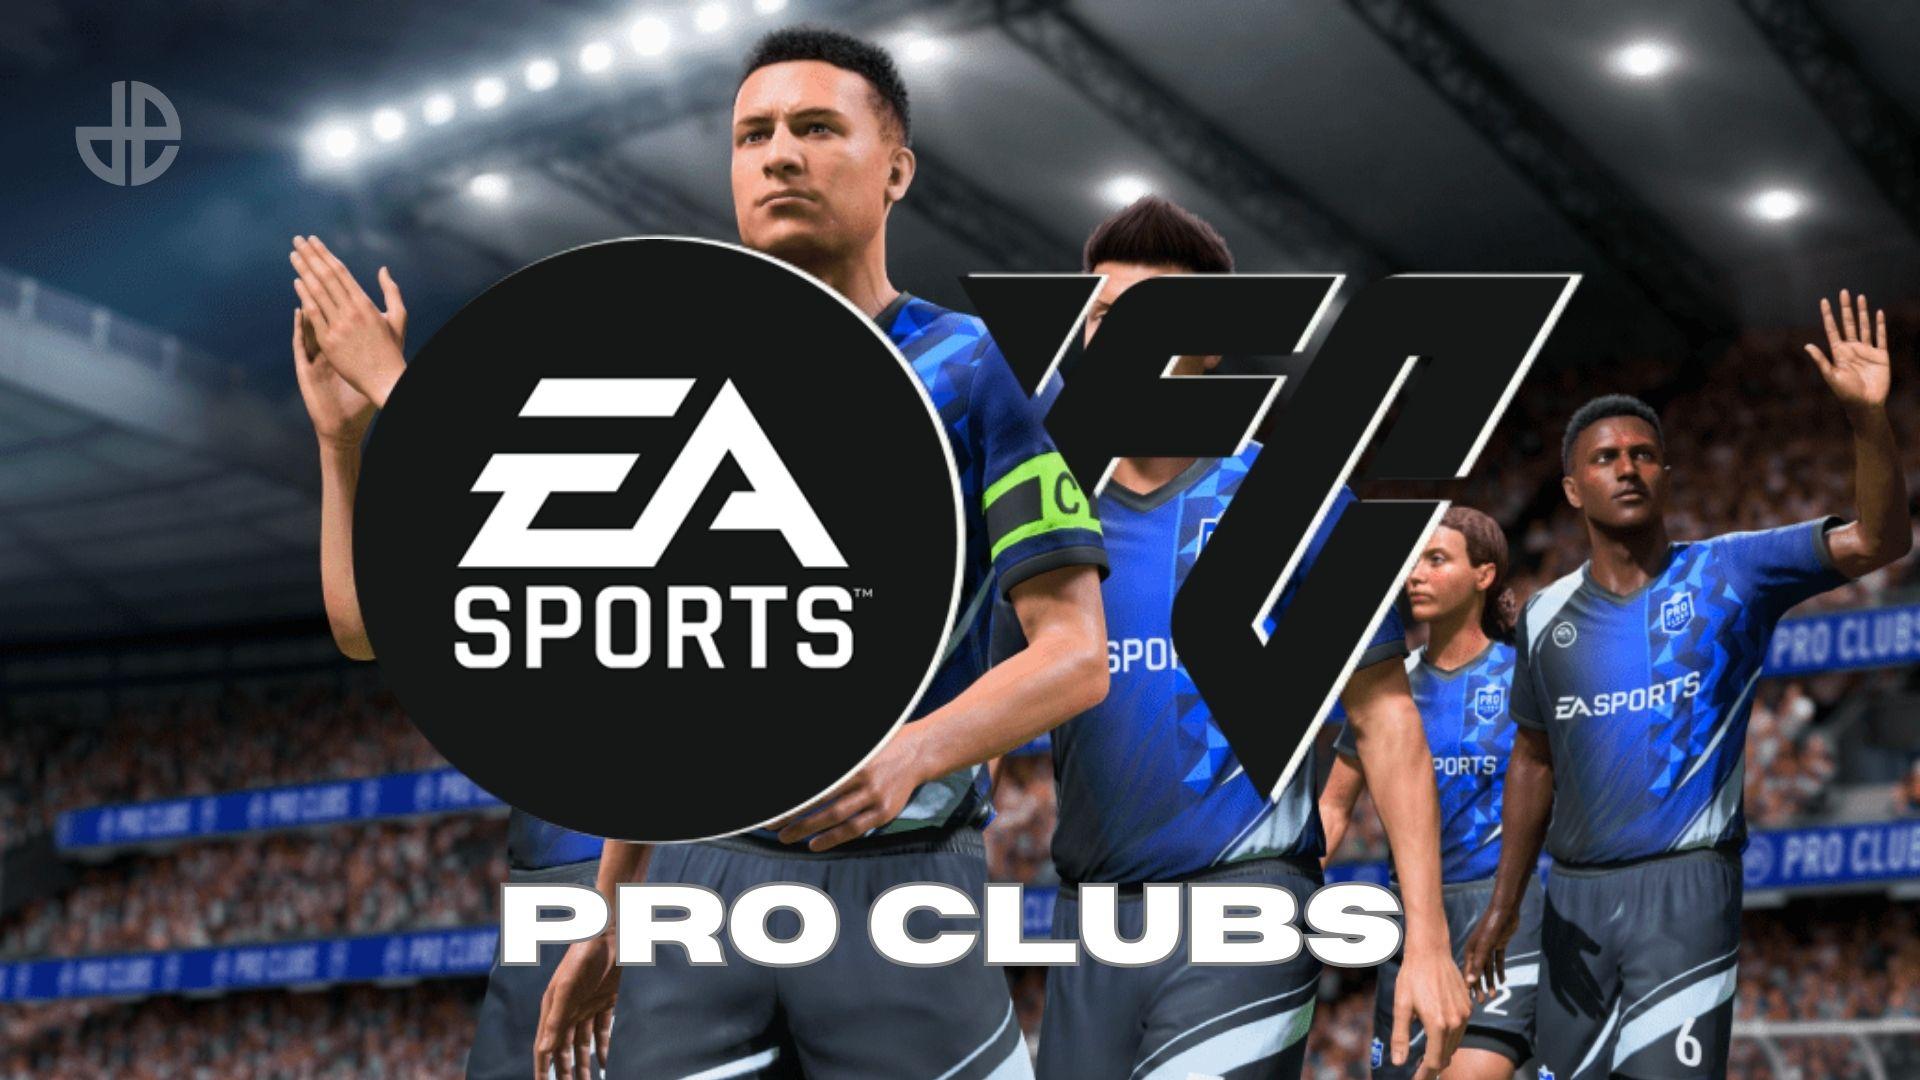 EA FC 24 PRO CLUB'S